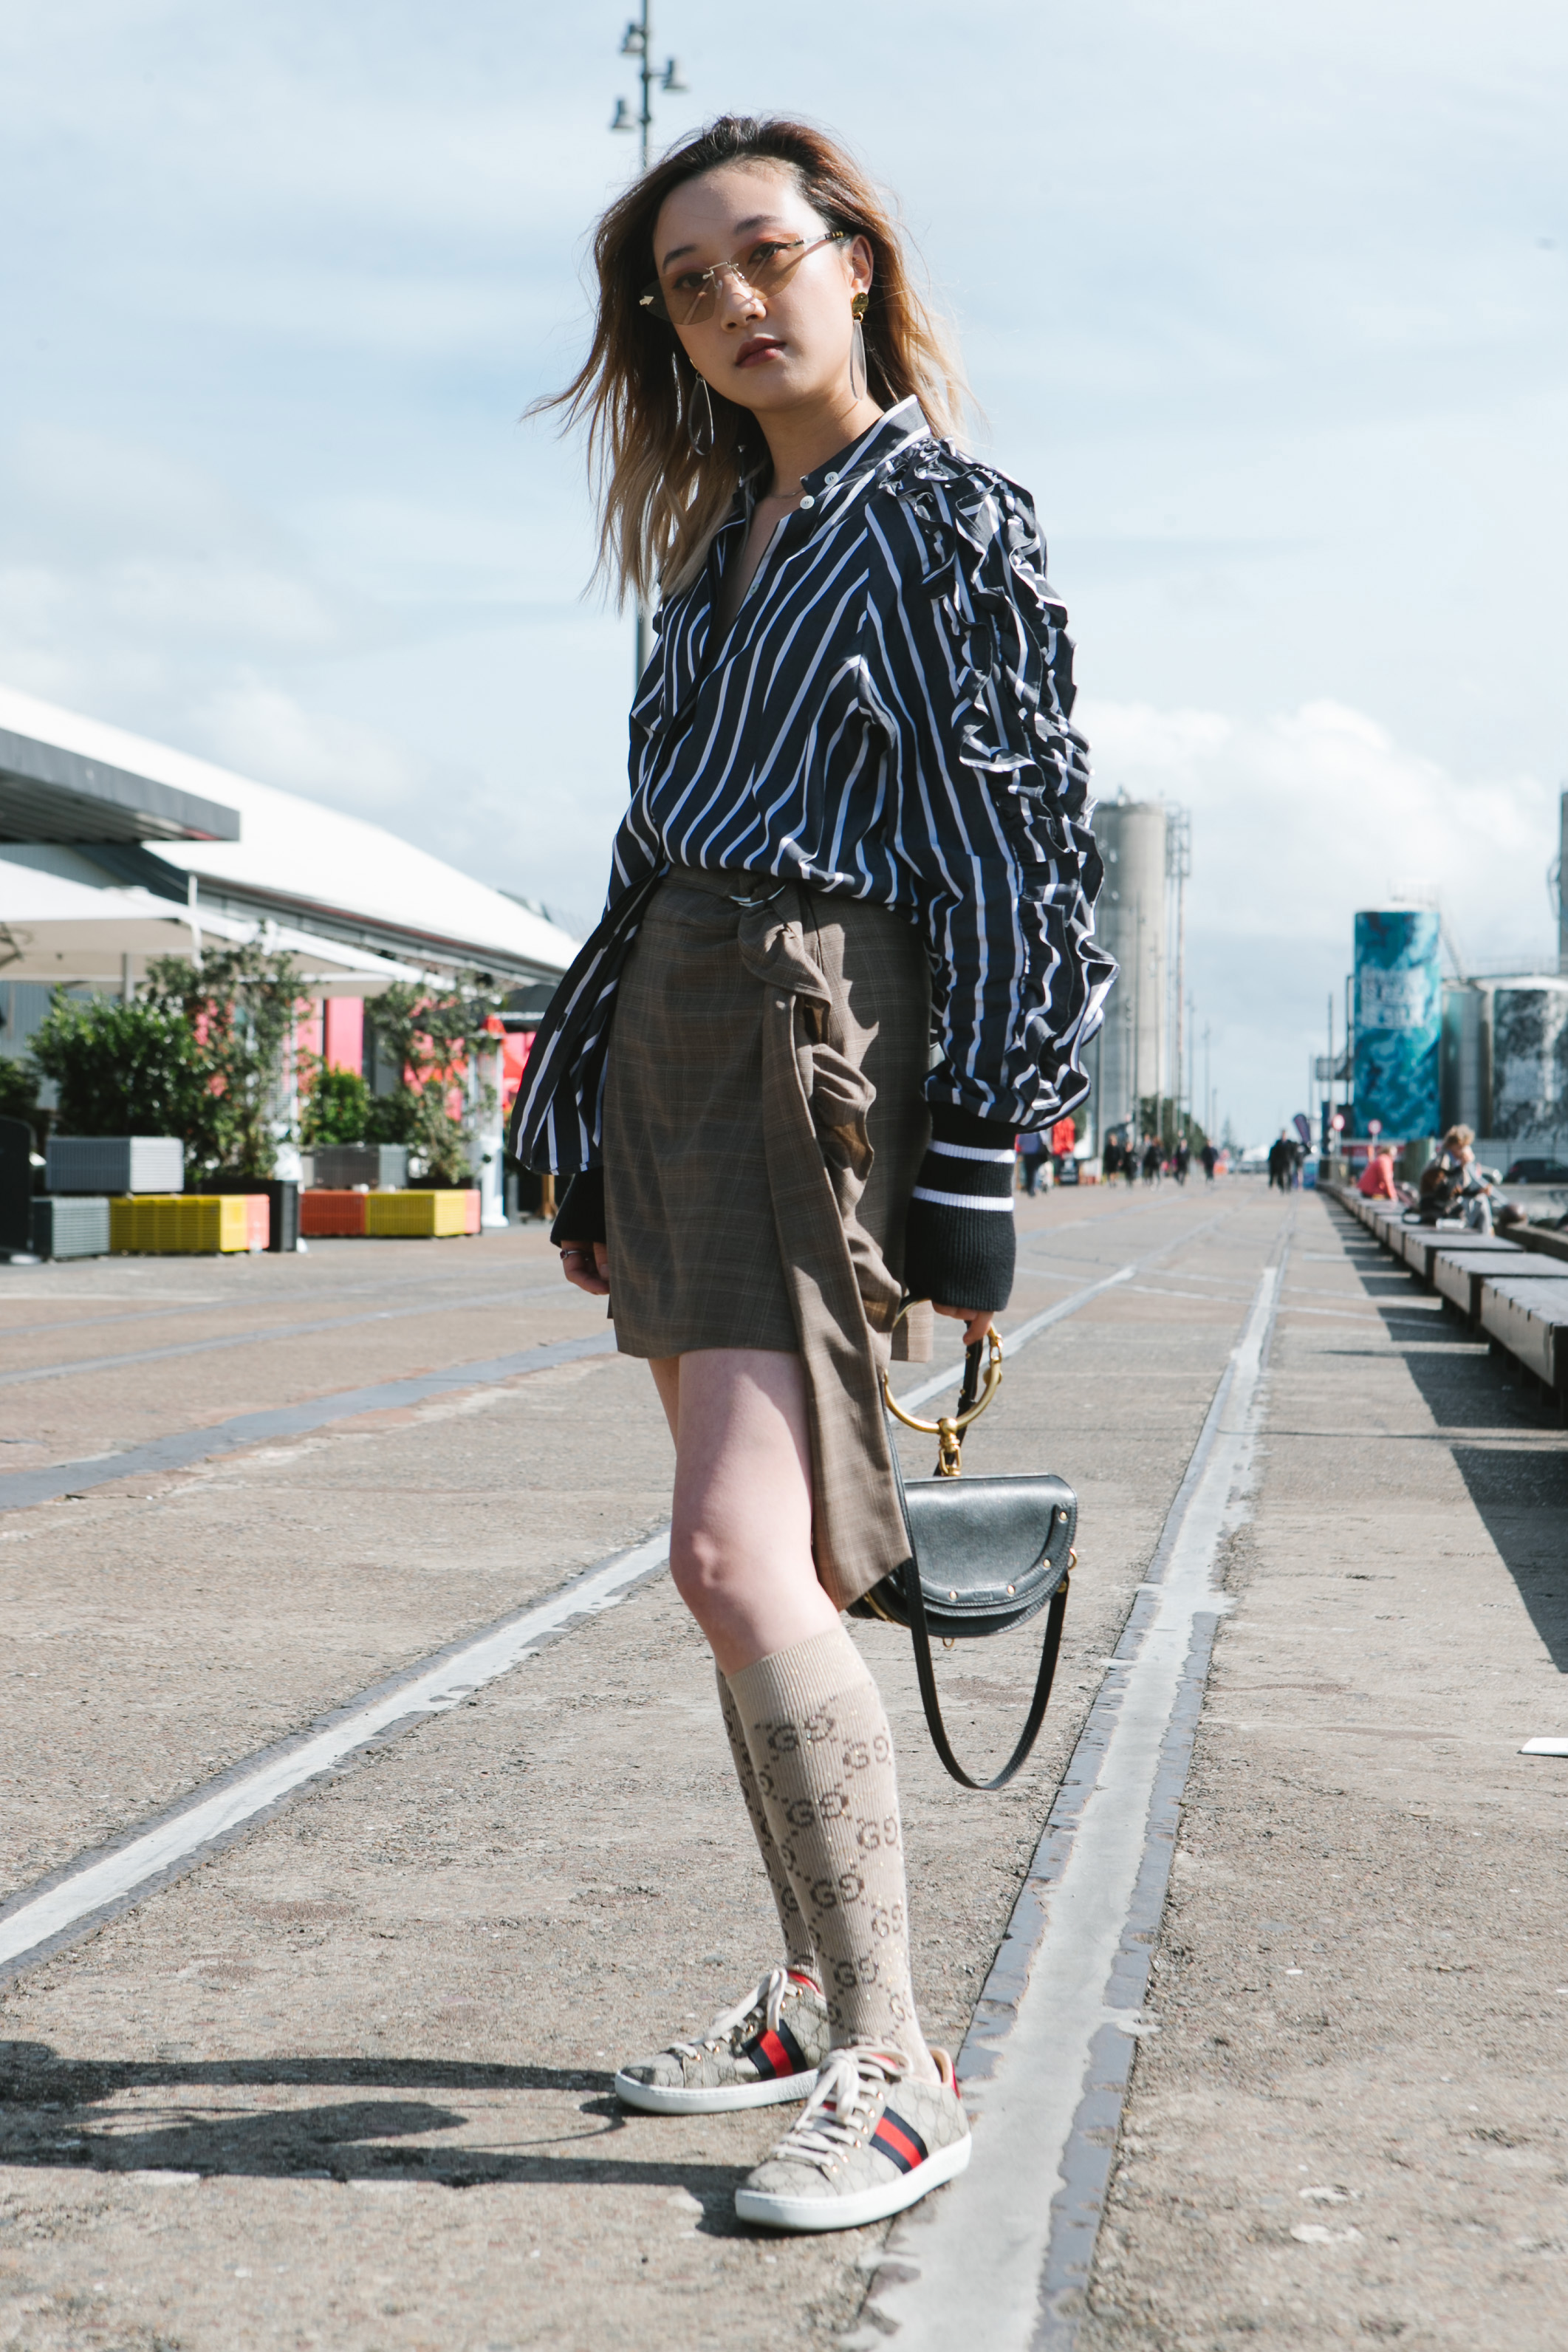 KINGKANG - FOUREYES  New Zealand Street Style Fashion Blog